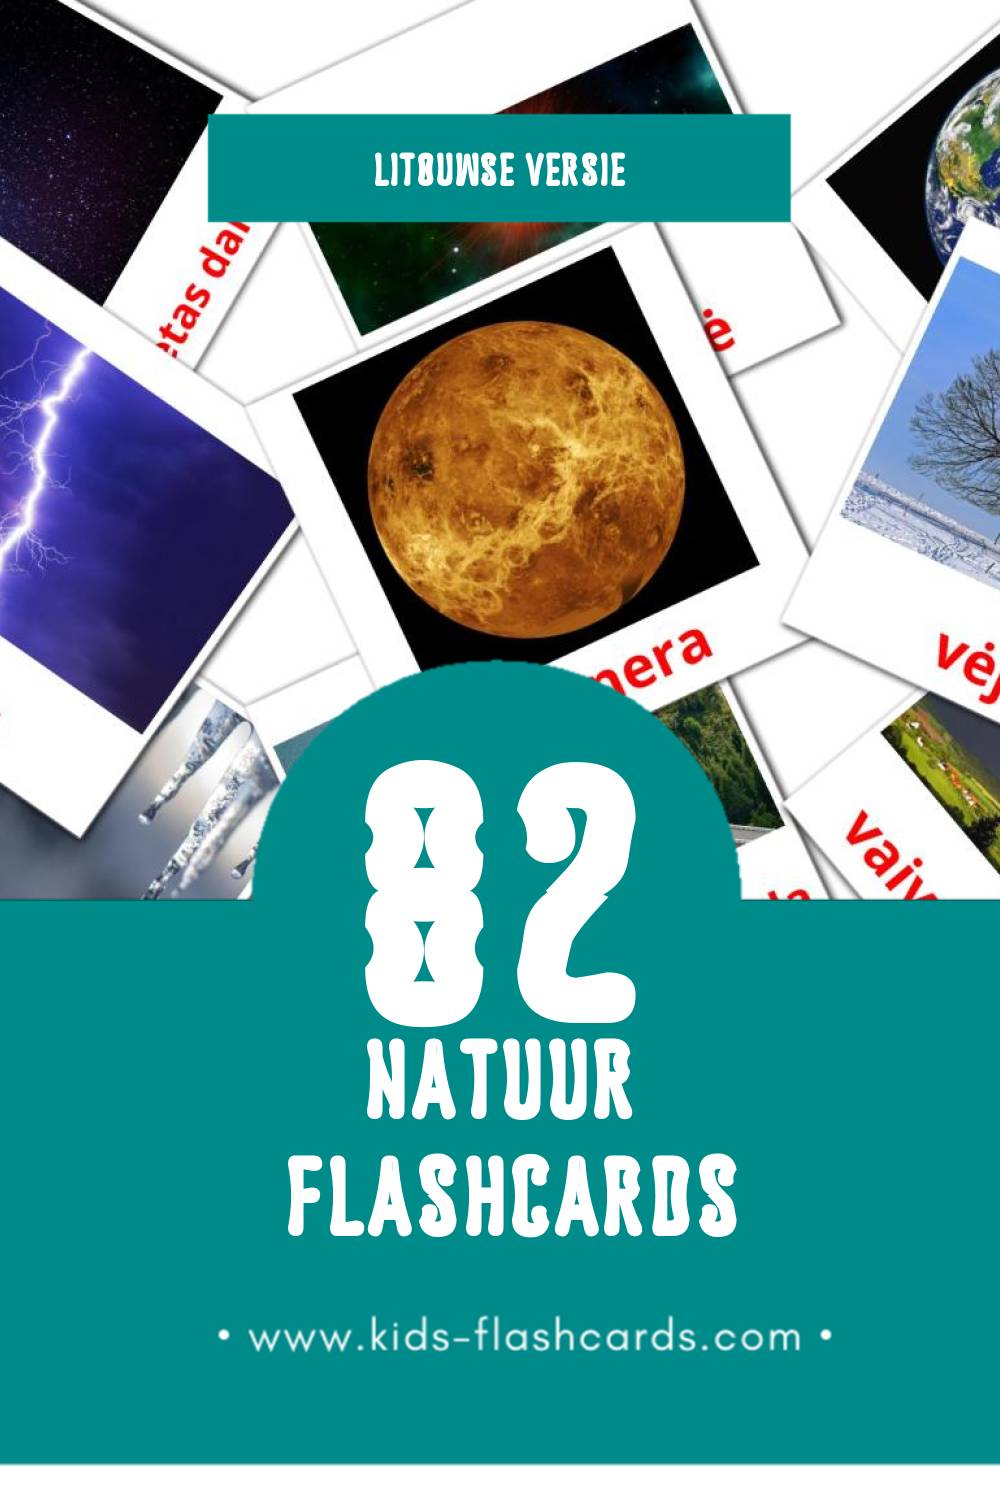 Visuele Gamta Flashcards voor Kleuters (82 kaarten in het Litouws)